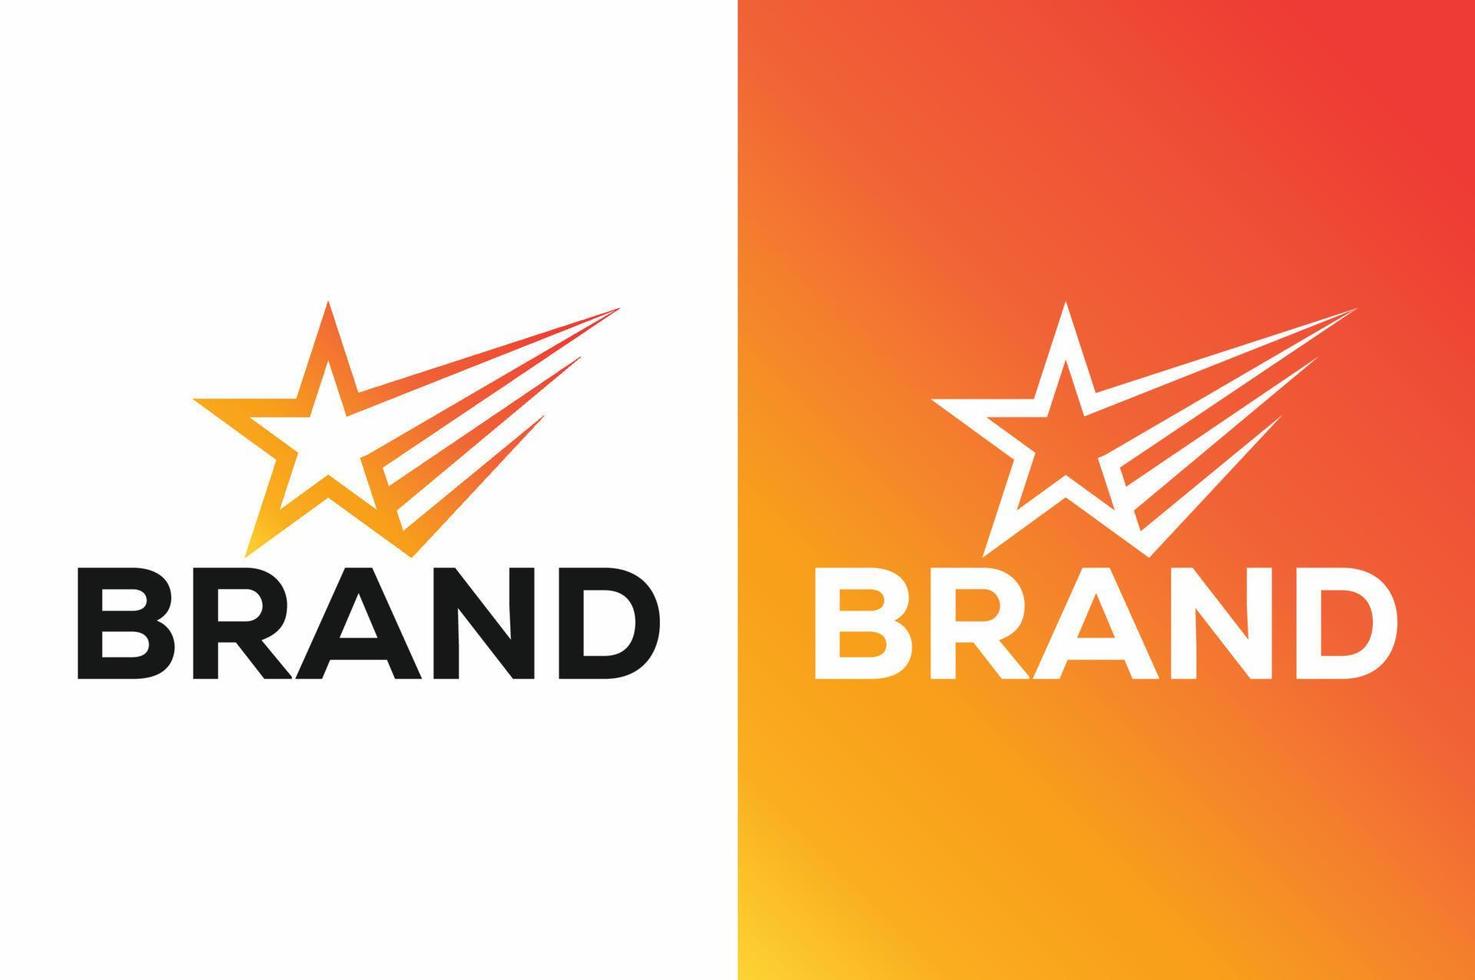 création d'icône vectorielle logo star marketing. vecteur